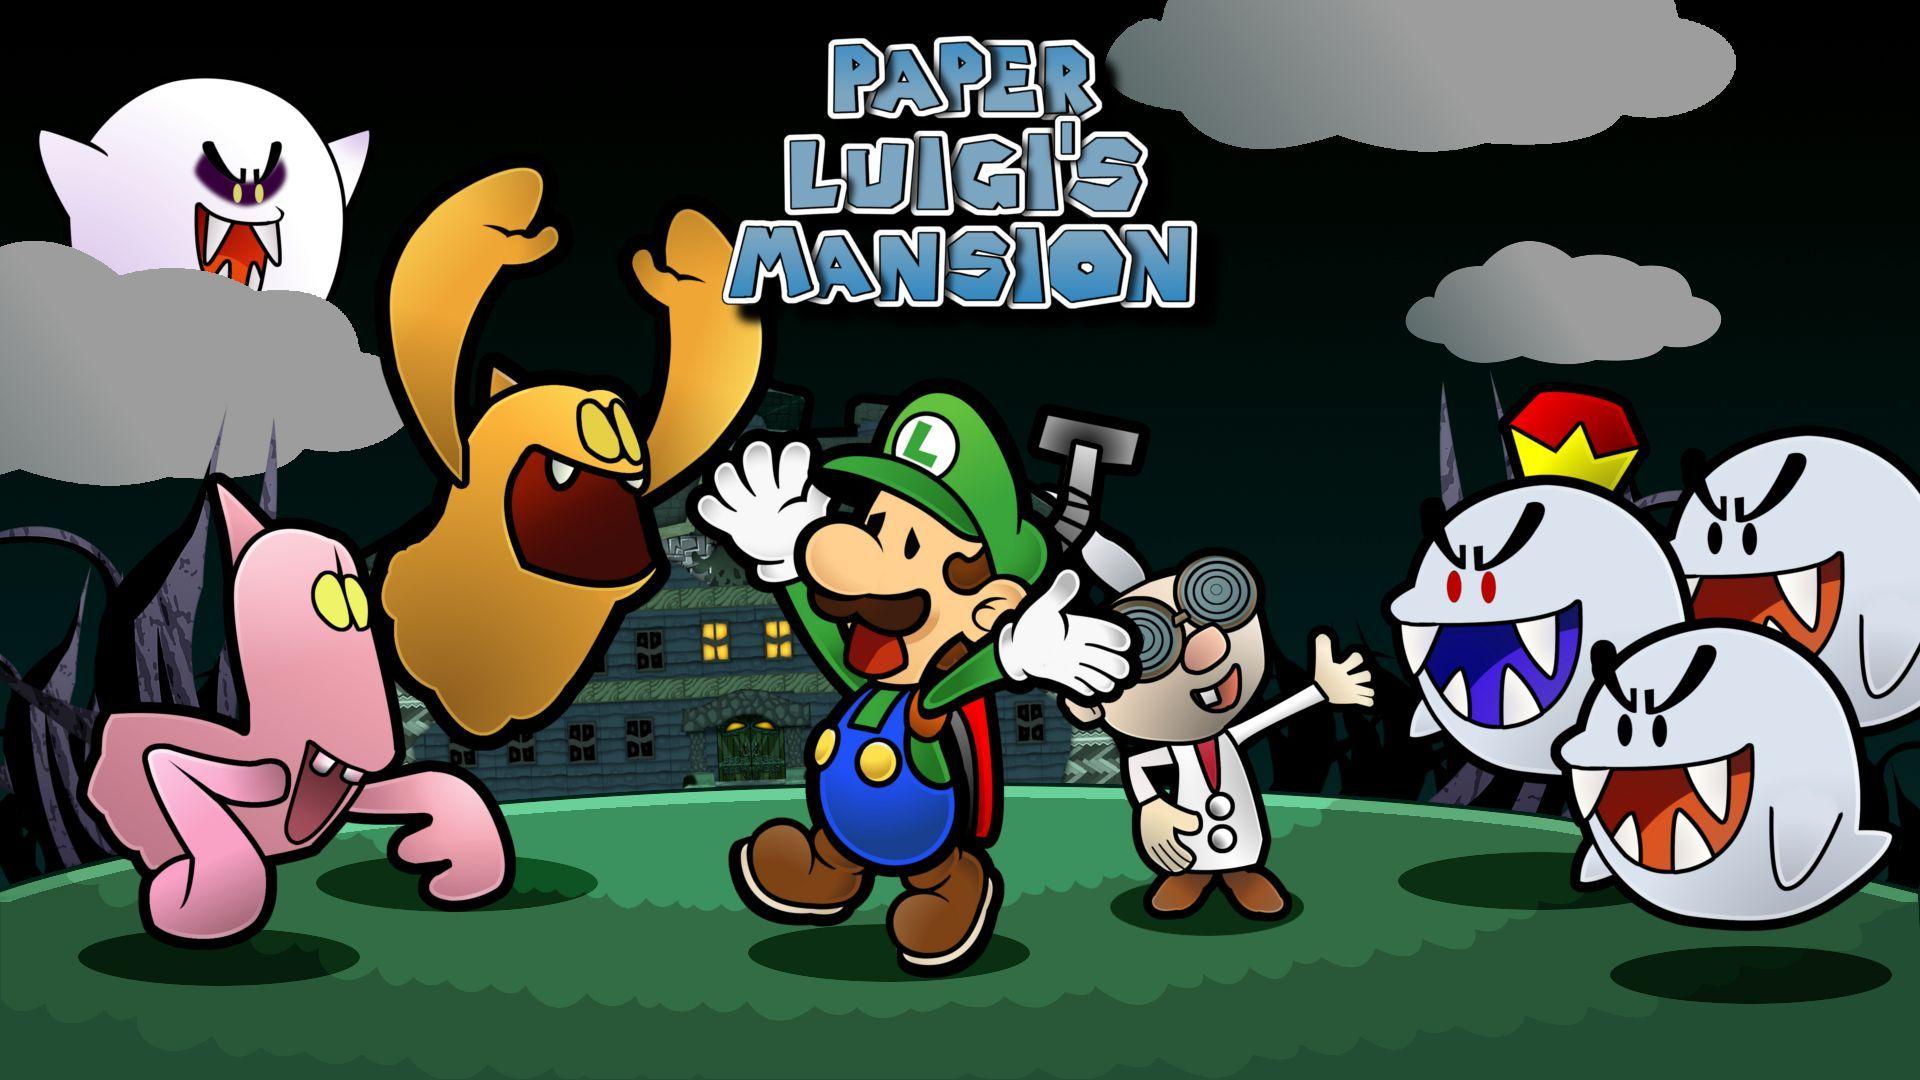 Paper Luigi's Mansion